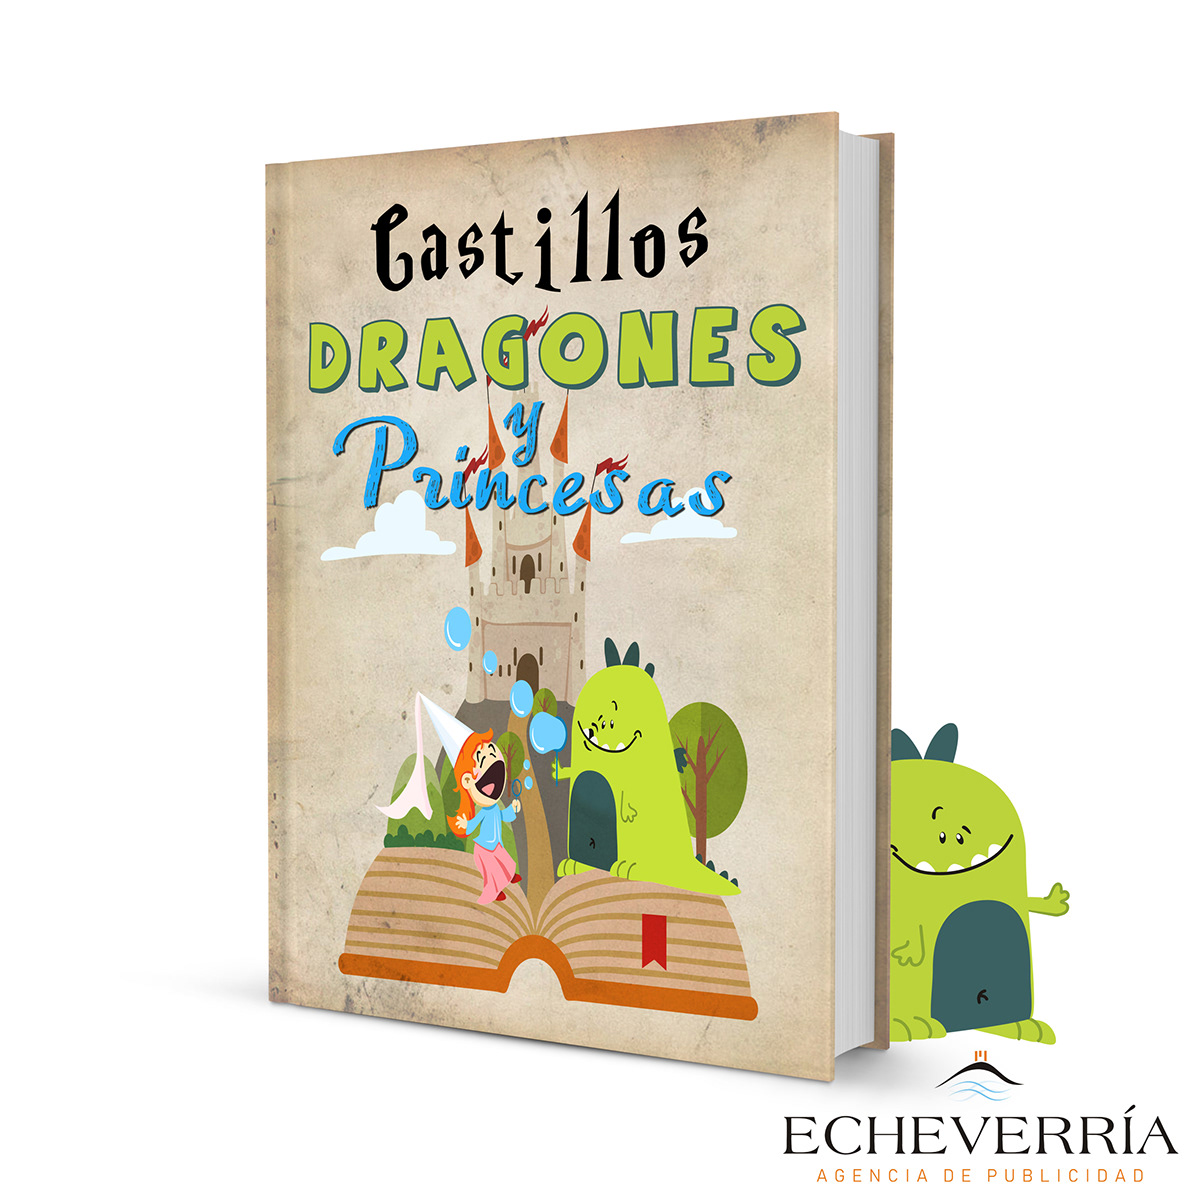 Children's Books ILLUSTRATION  editorial Echeverría Agencia de publicidad ilustracion libros infantiles niños